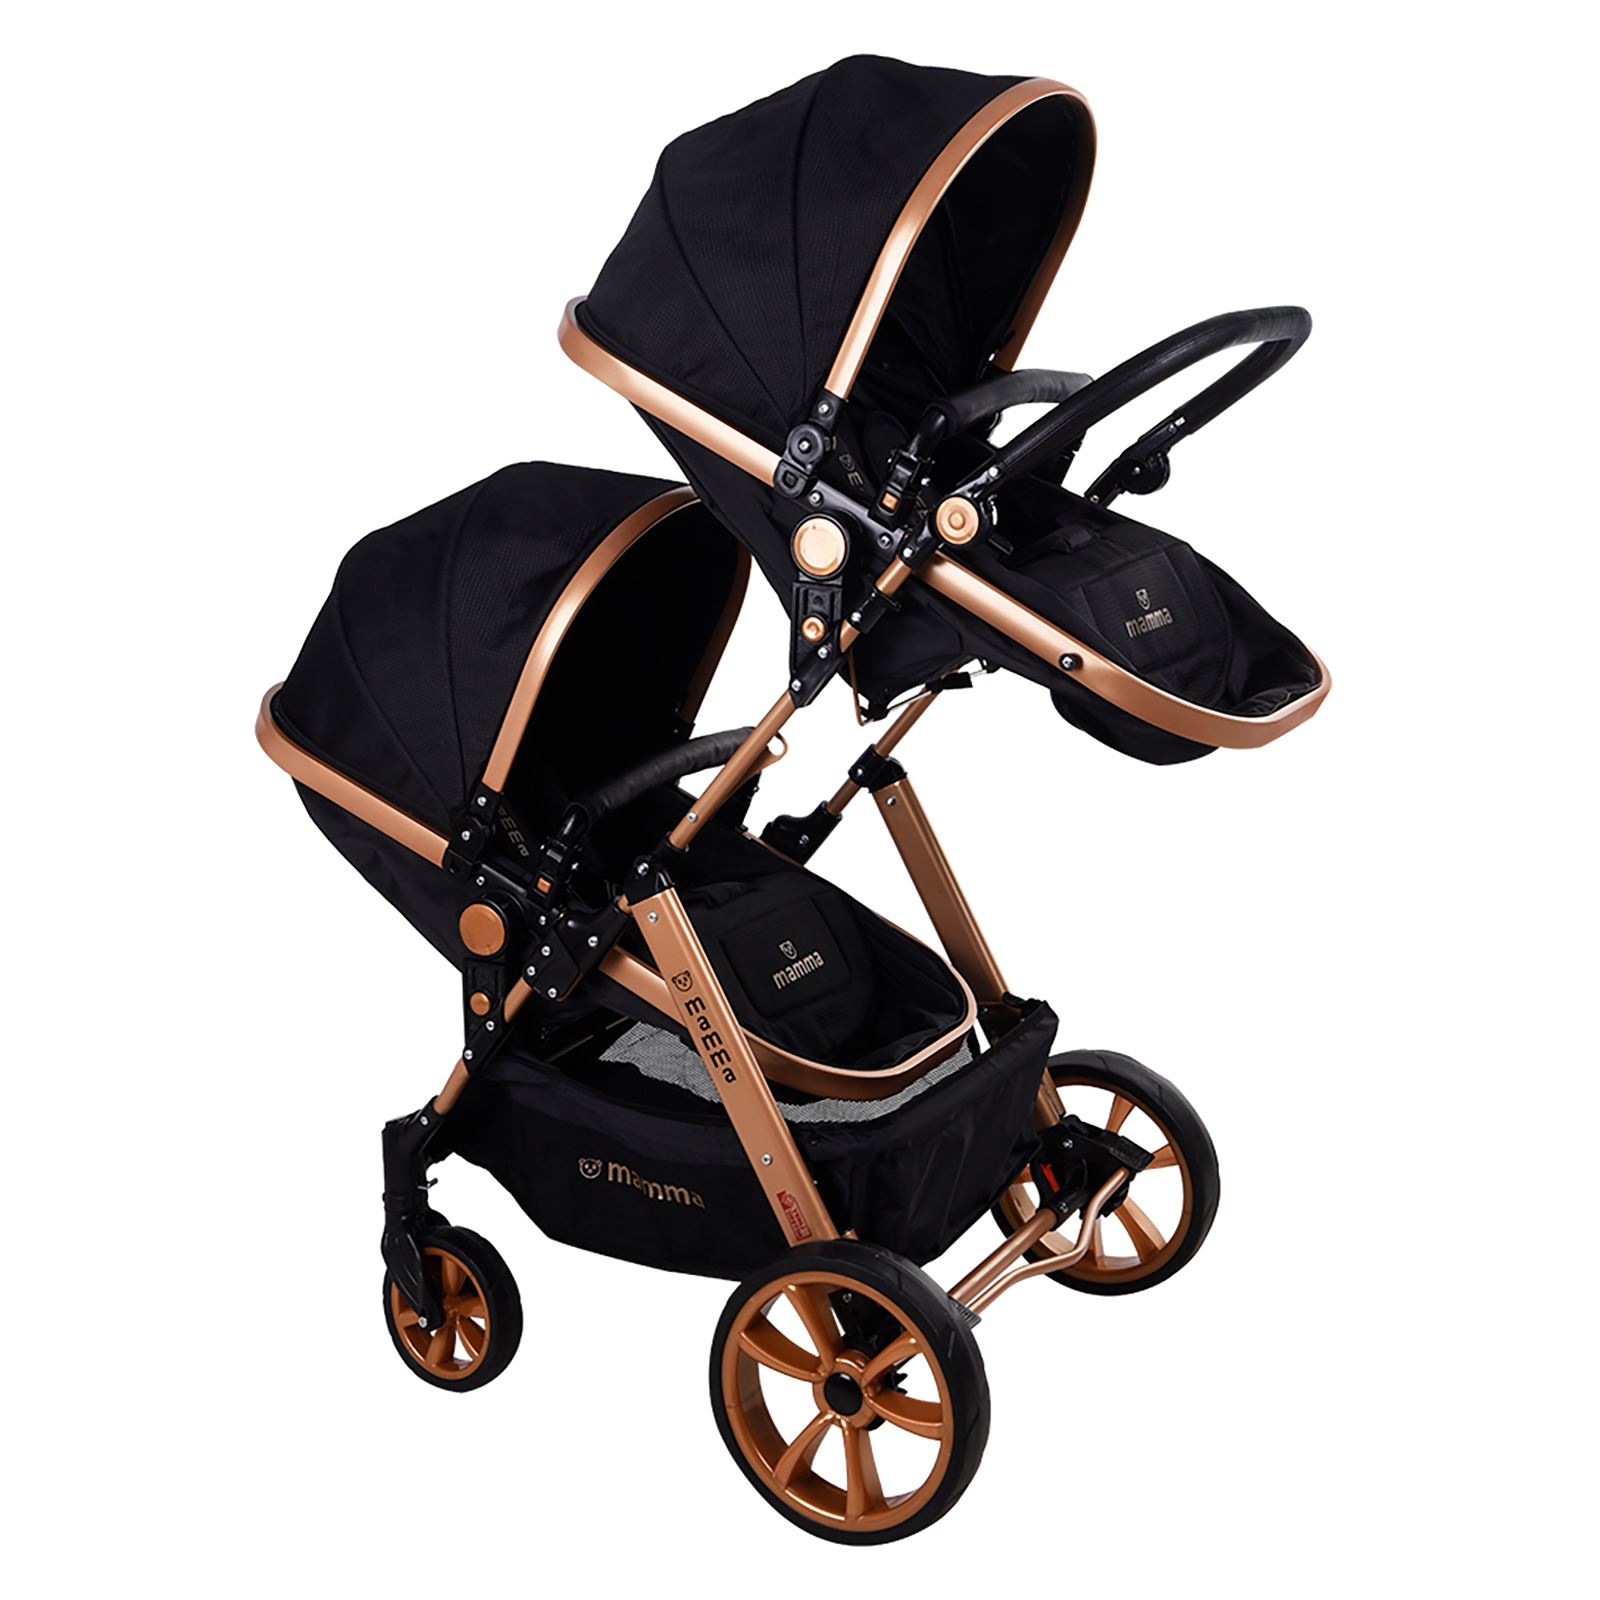 Mamma Twin Gold Travel Sistem İkiz Bebek Arabası  Siyah